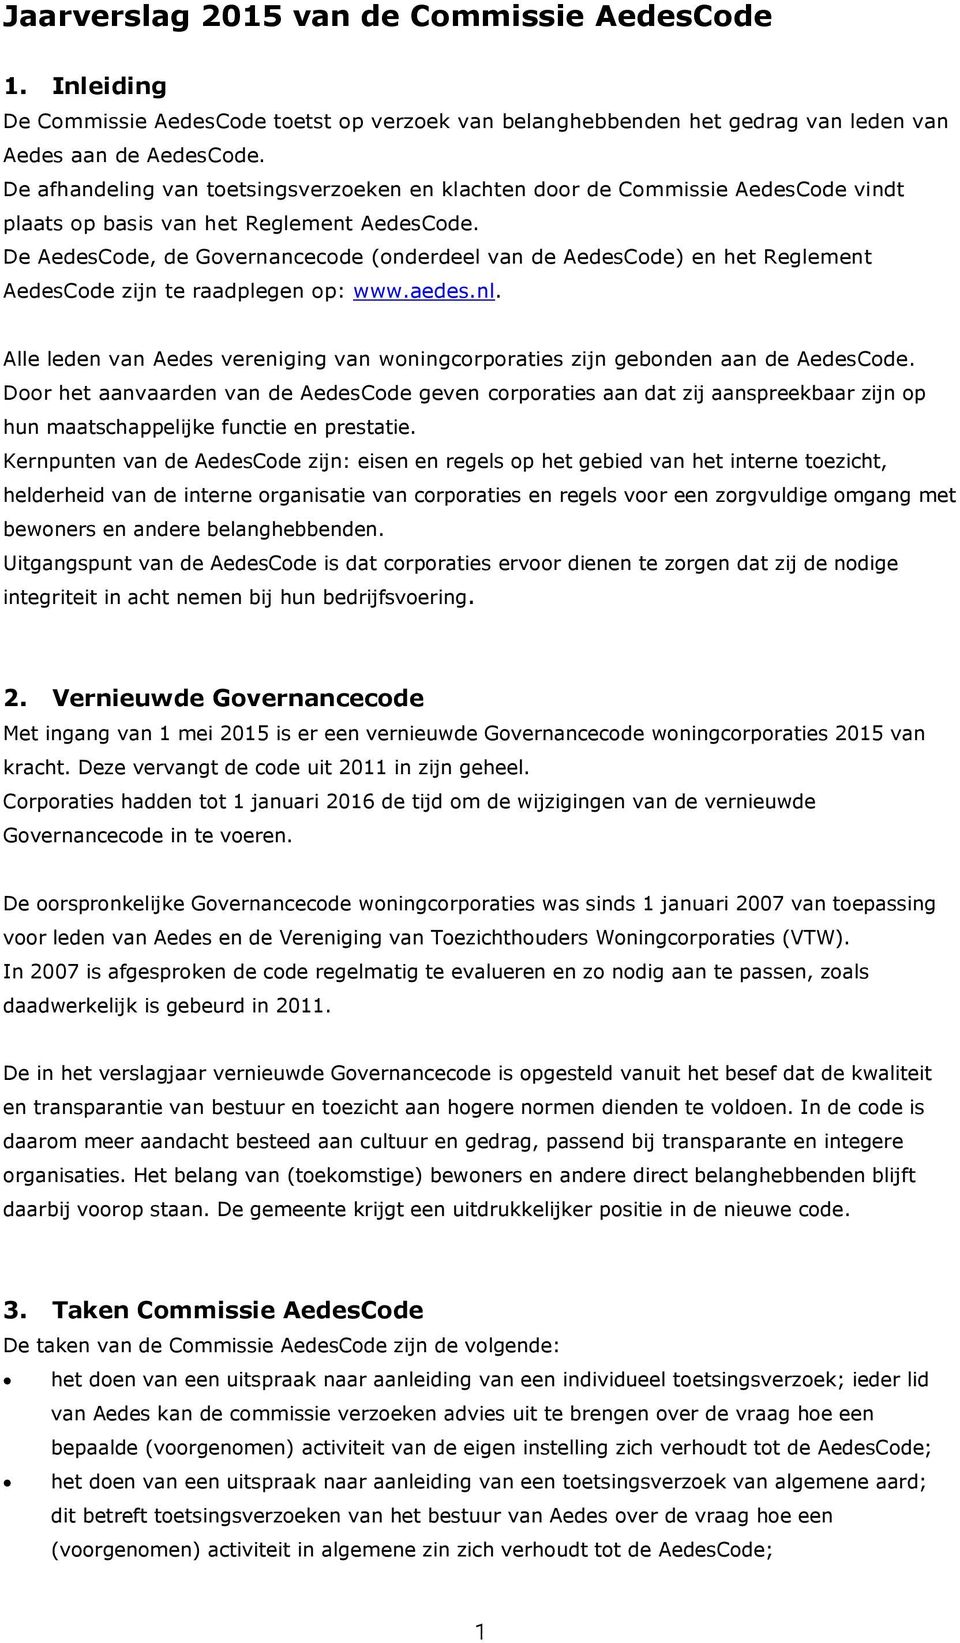 De AedesCode, de Governancecode (onderdeel van de AedesCode) en het Reglement AedesCode zijn te raadplegen op: www.aedes.nl.